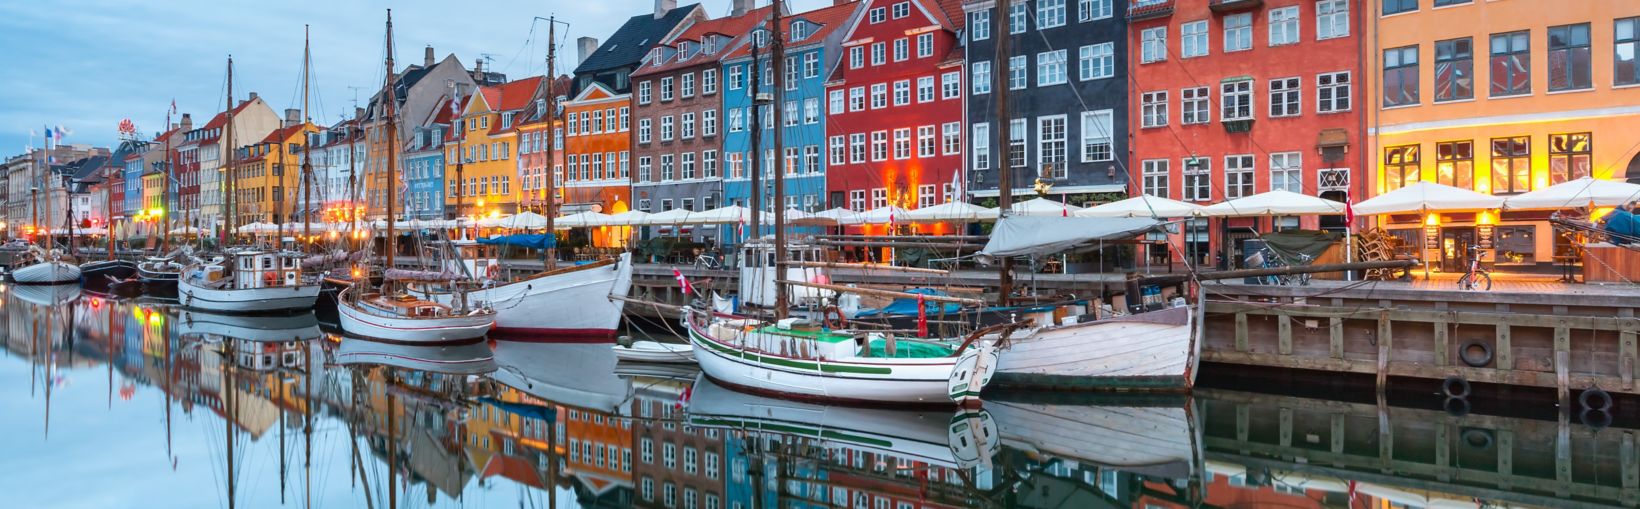 Nyhavn con coloridas fachadas de casas antiguas y barcos antiguos en el casco antiguo de Copenhague, capital de Dinamarca.